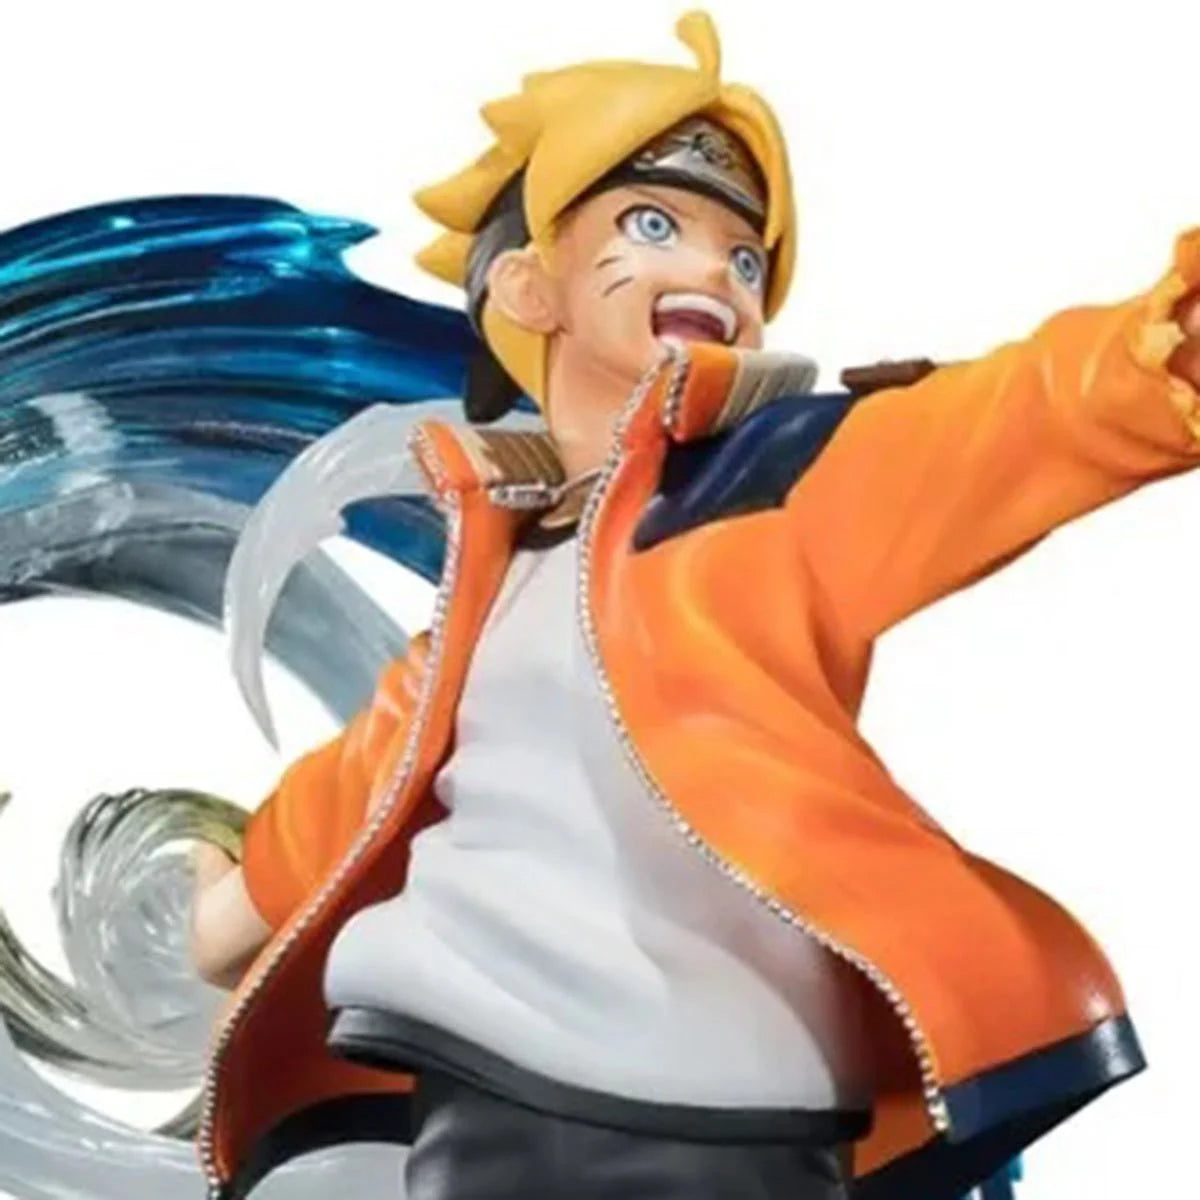 Bandai Tamashii Nations Figuarts ZERO: Boruto Naruto Next Generations - Boruto Uzumaki Kizuna Relation Estatua